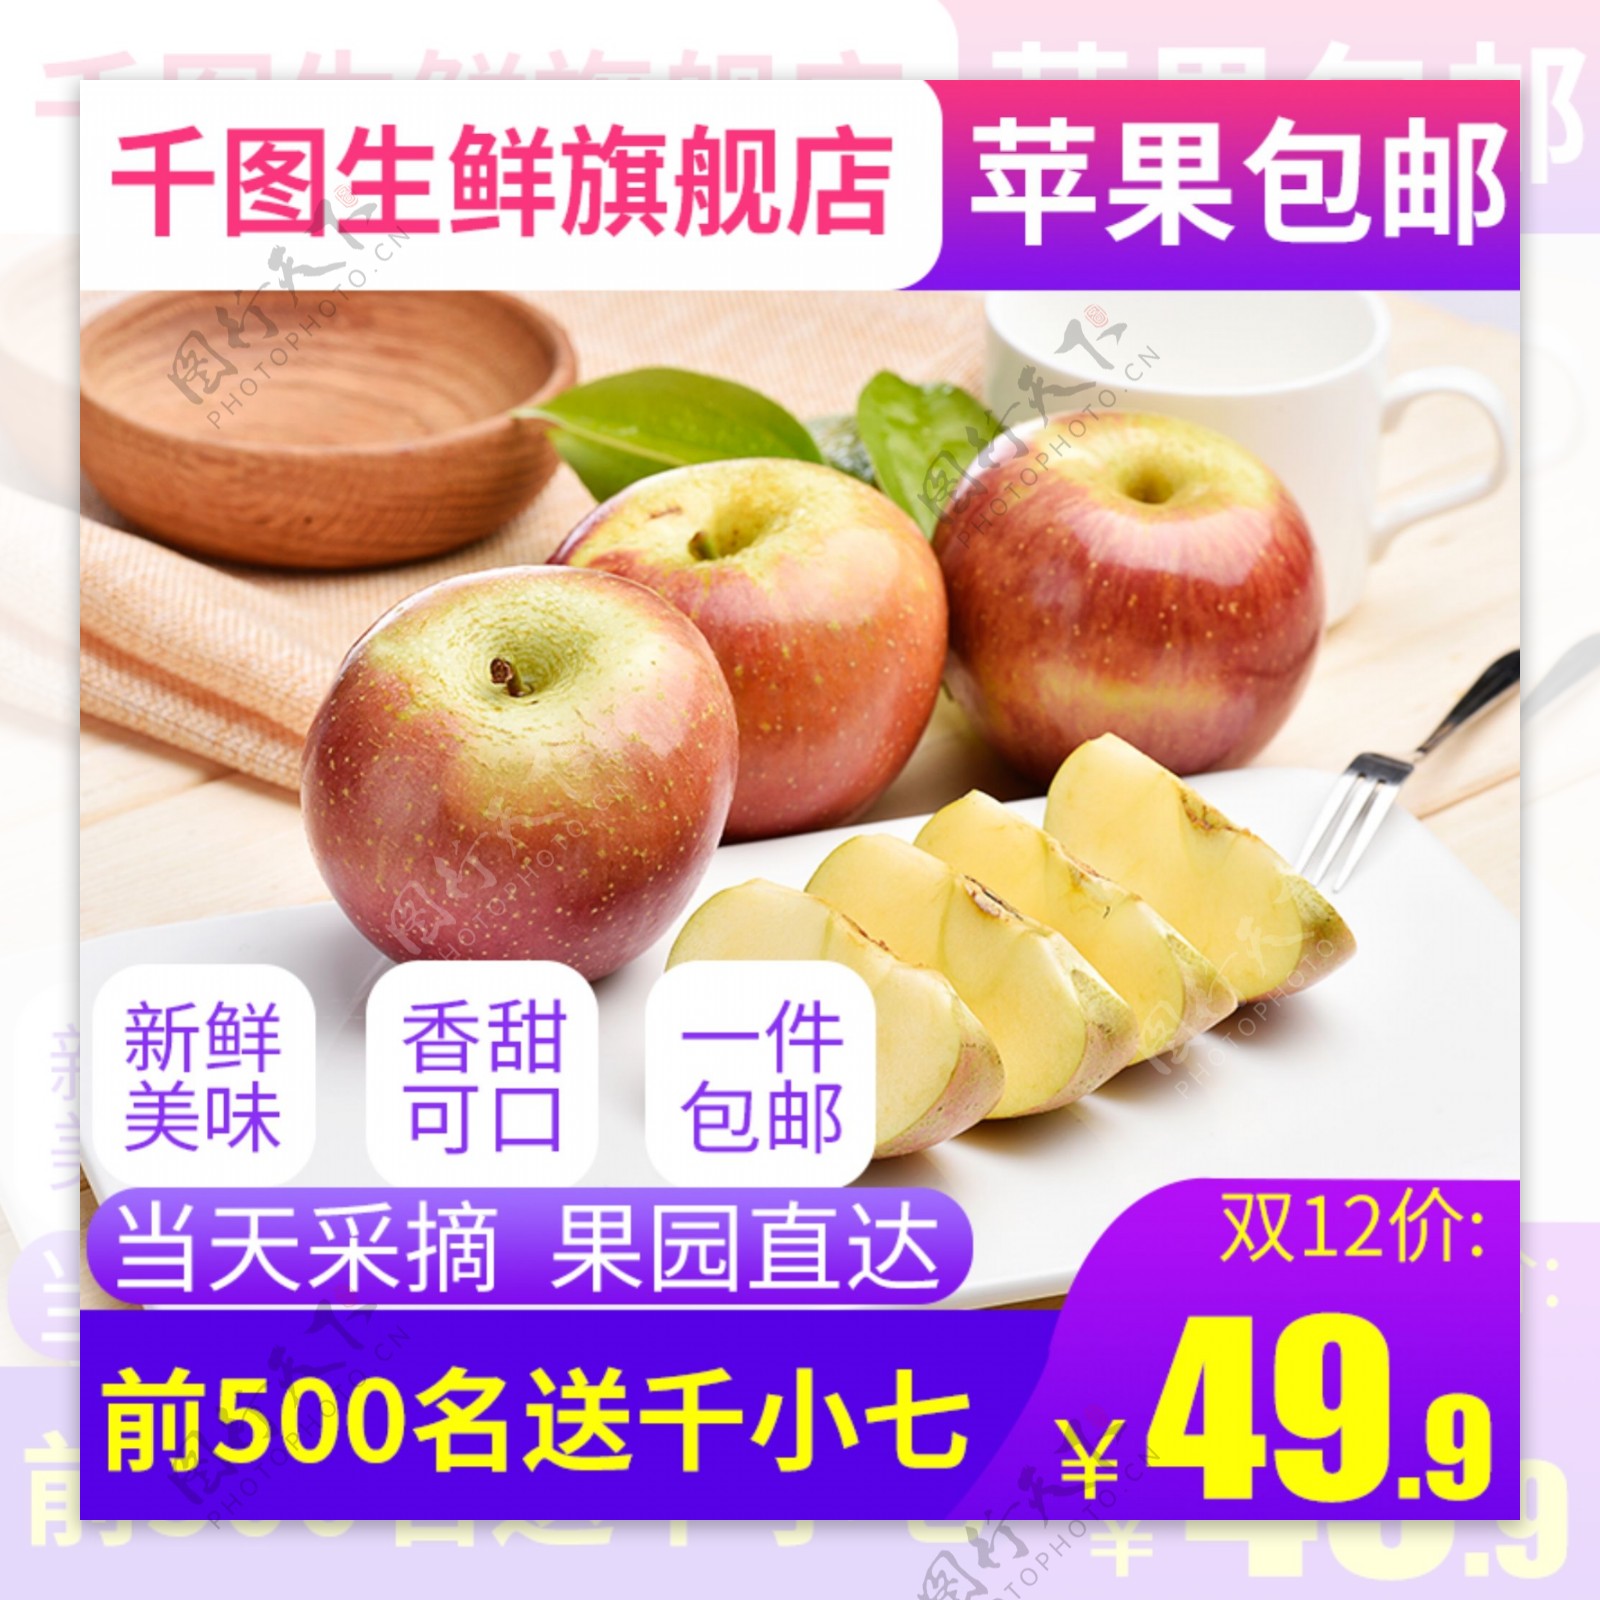 双12电商淘宝水果生鲜苹果主图直通车